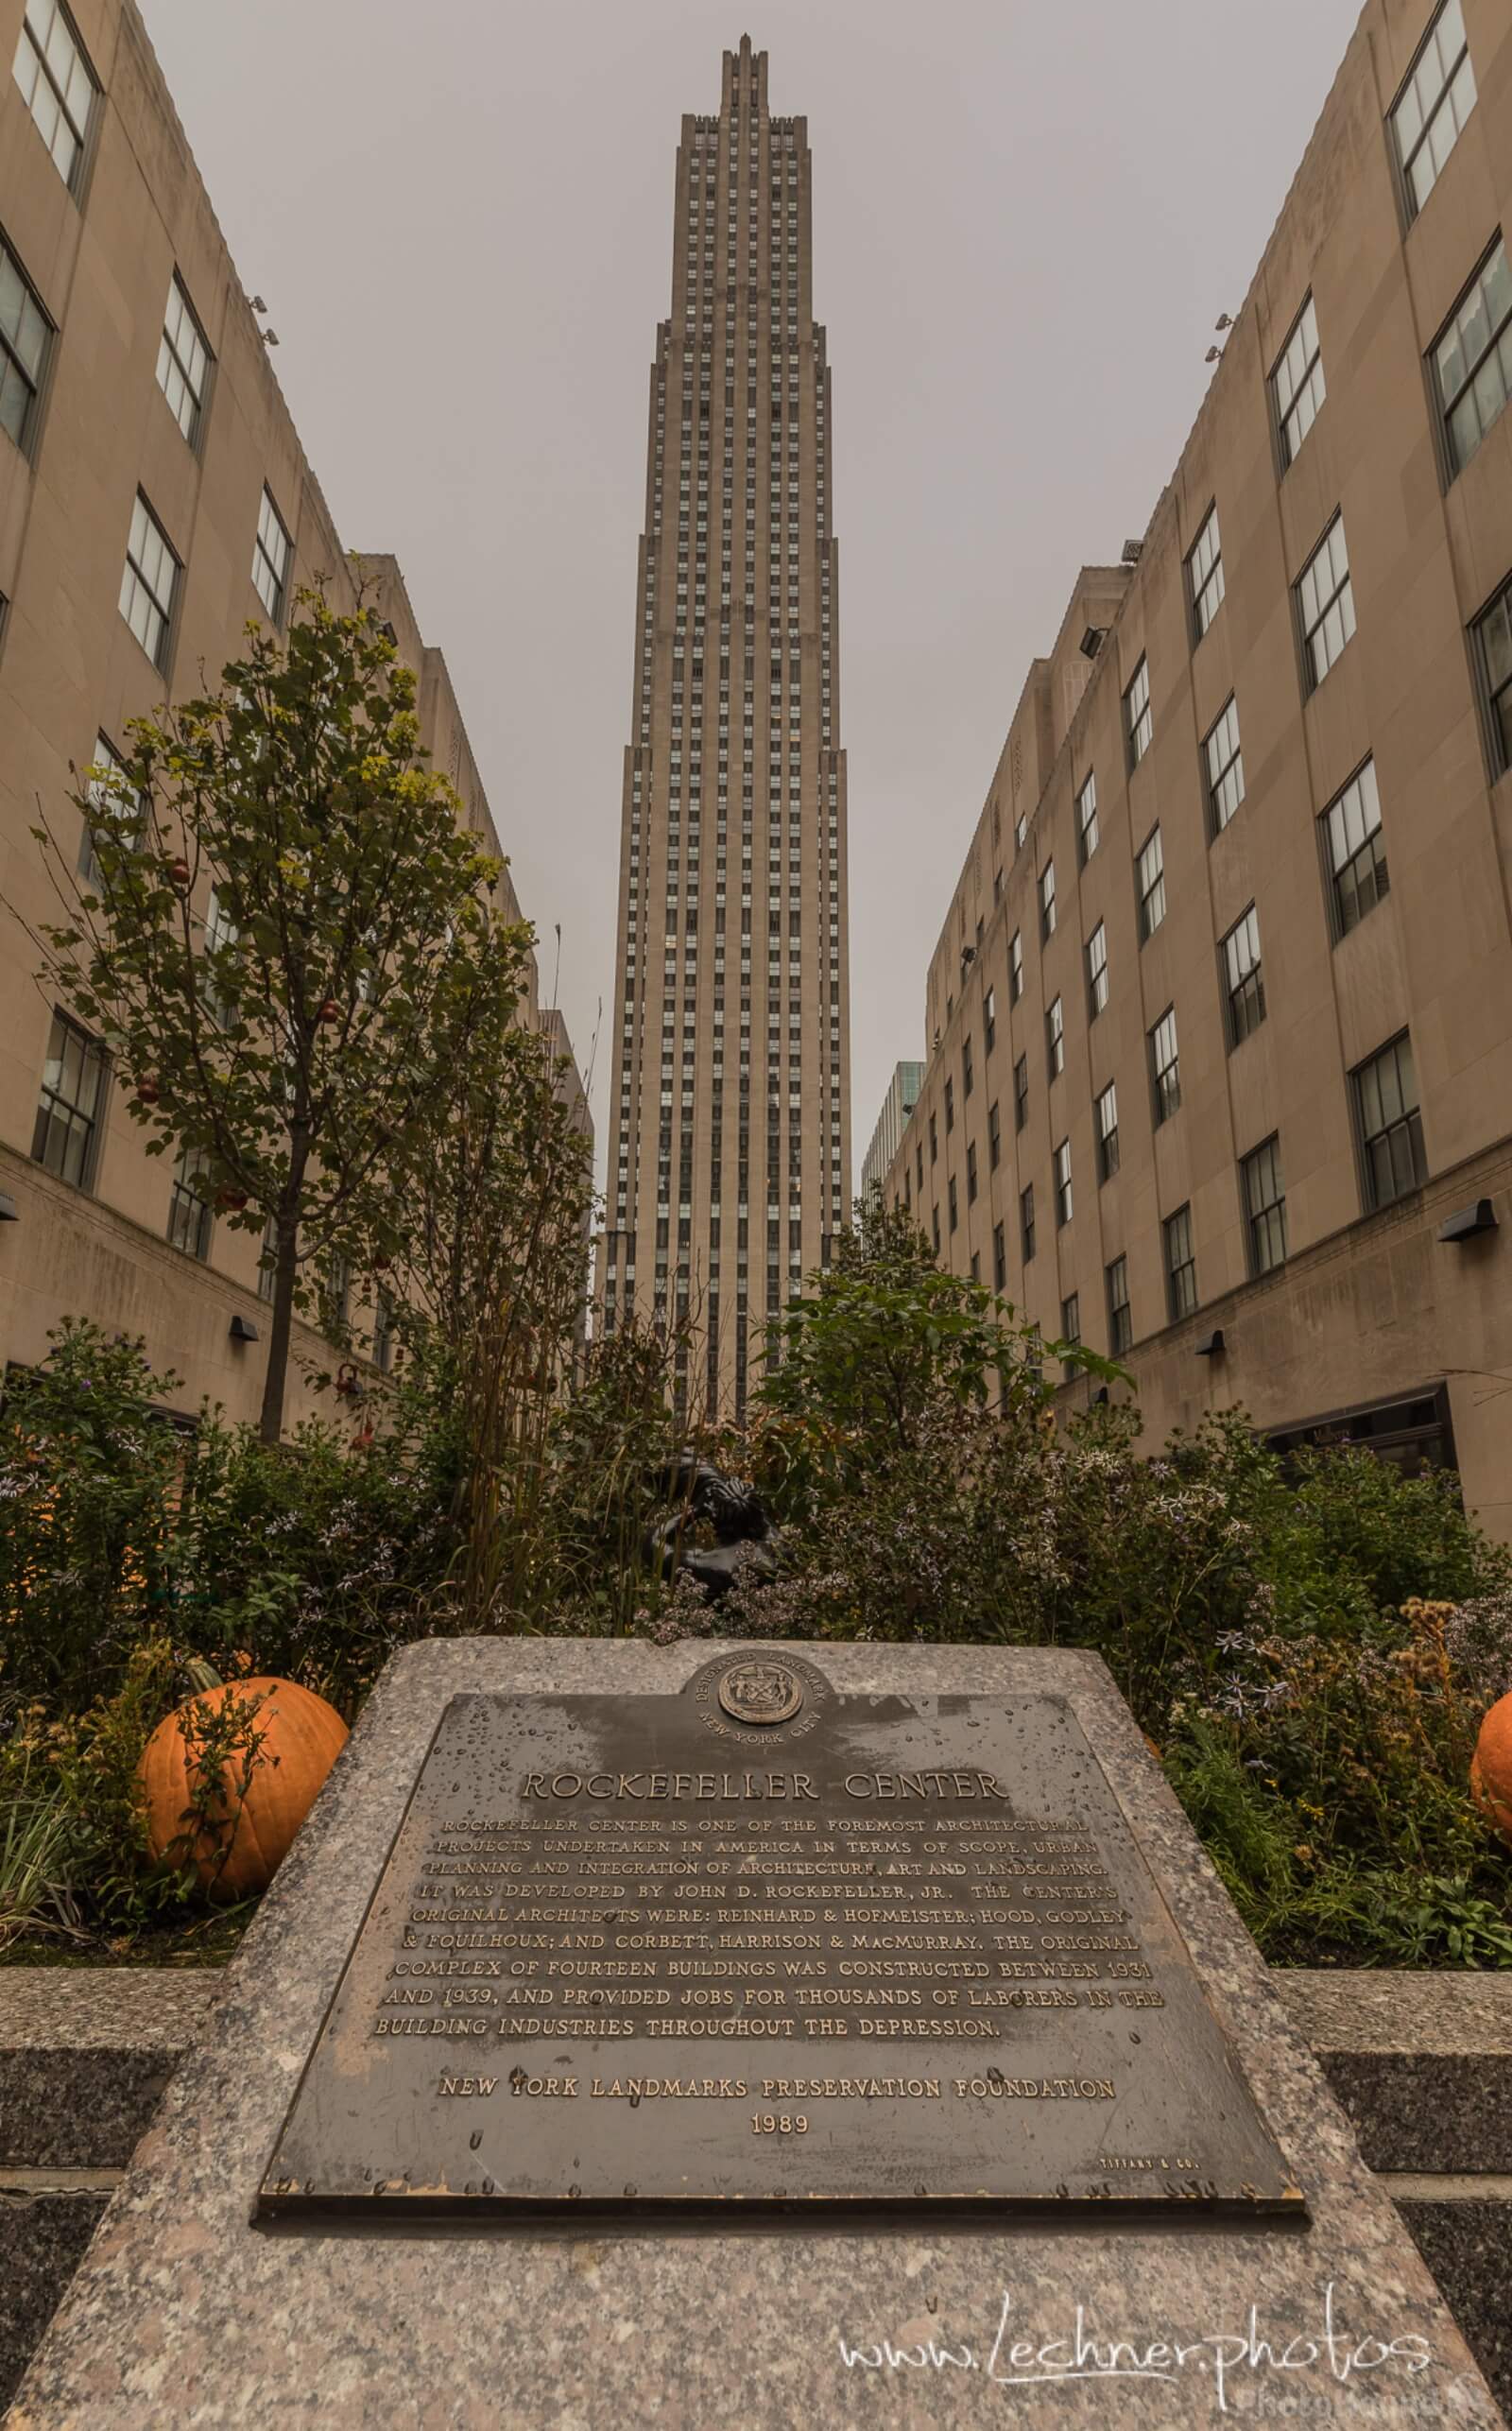 Image of Rockefeller Center by Florian Lechner